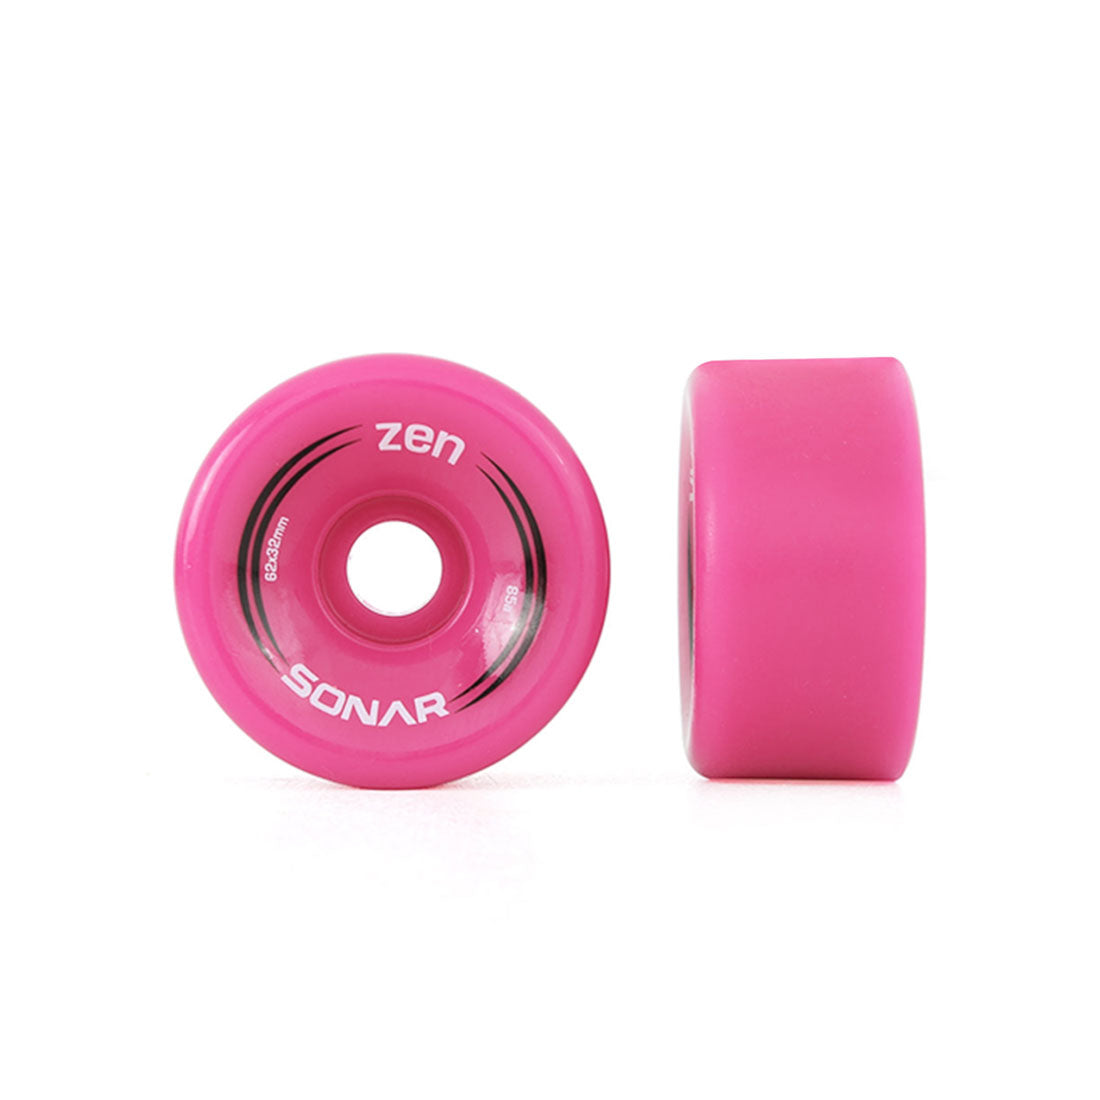 Radar Zen 62mm 85a Wheels 4pk Pink Roller Skate Wheels